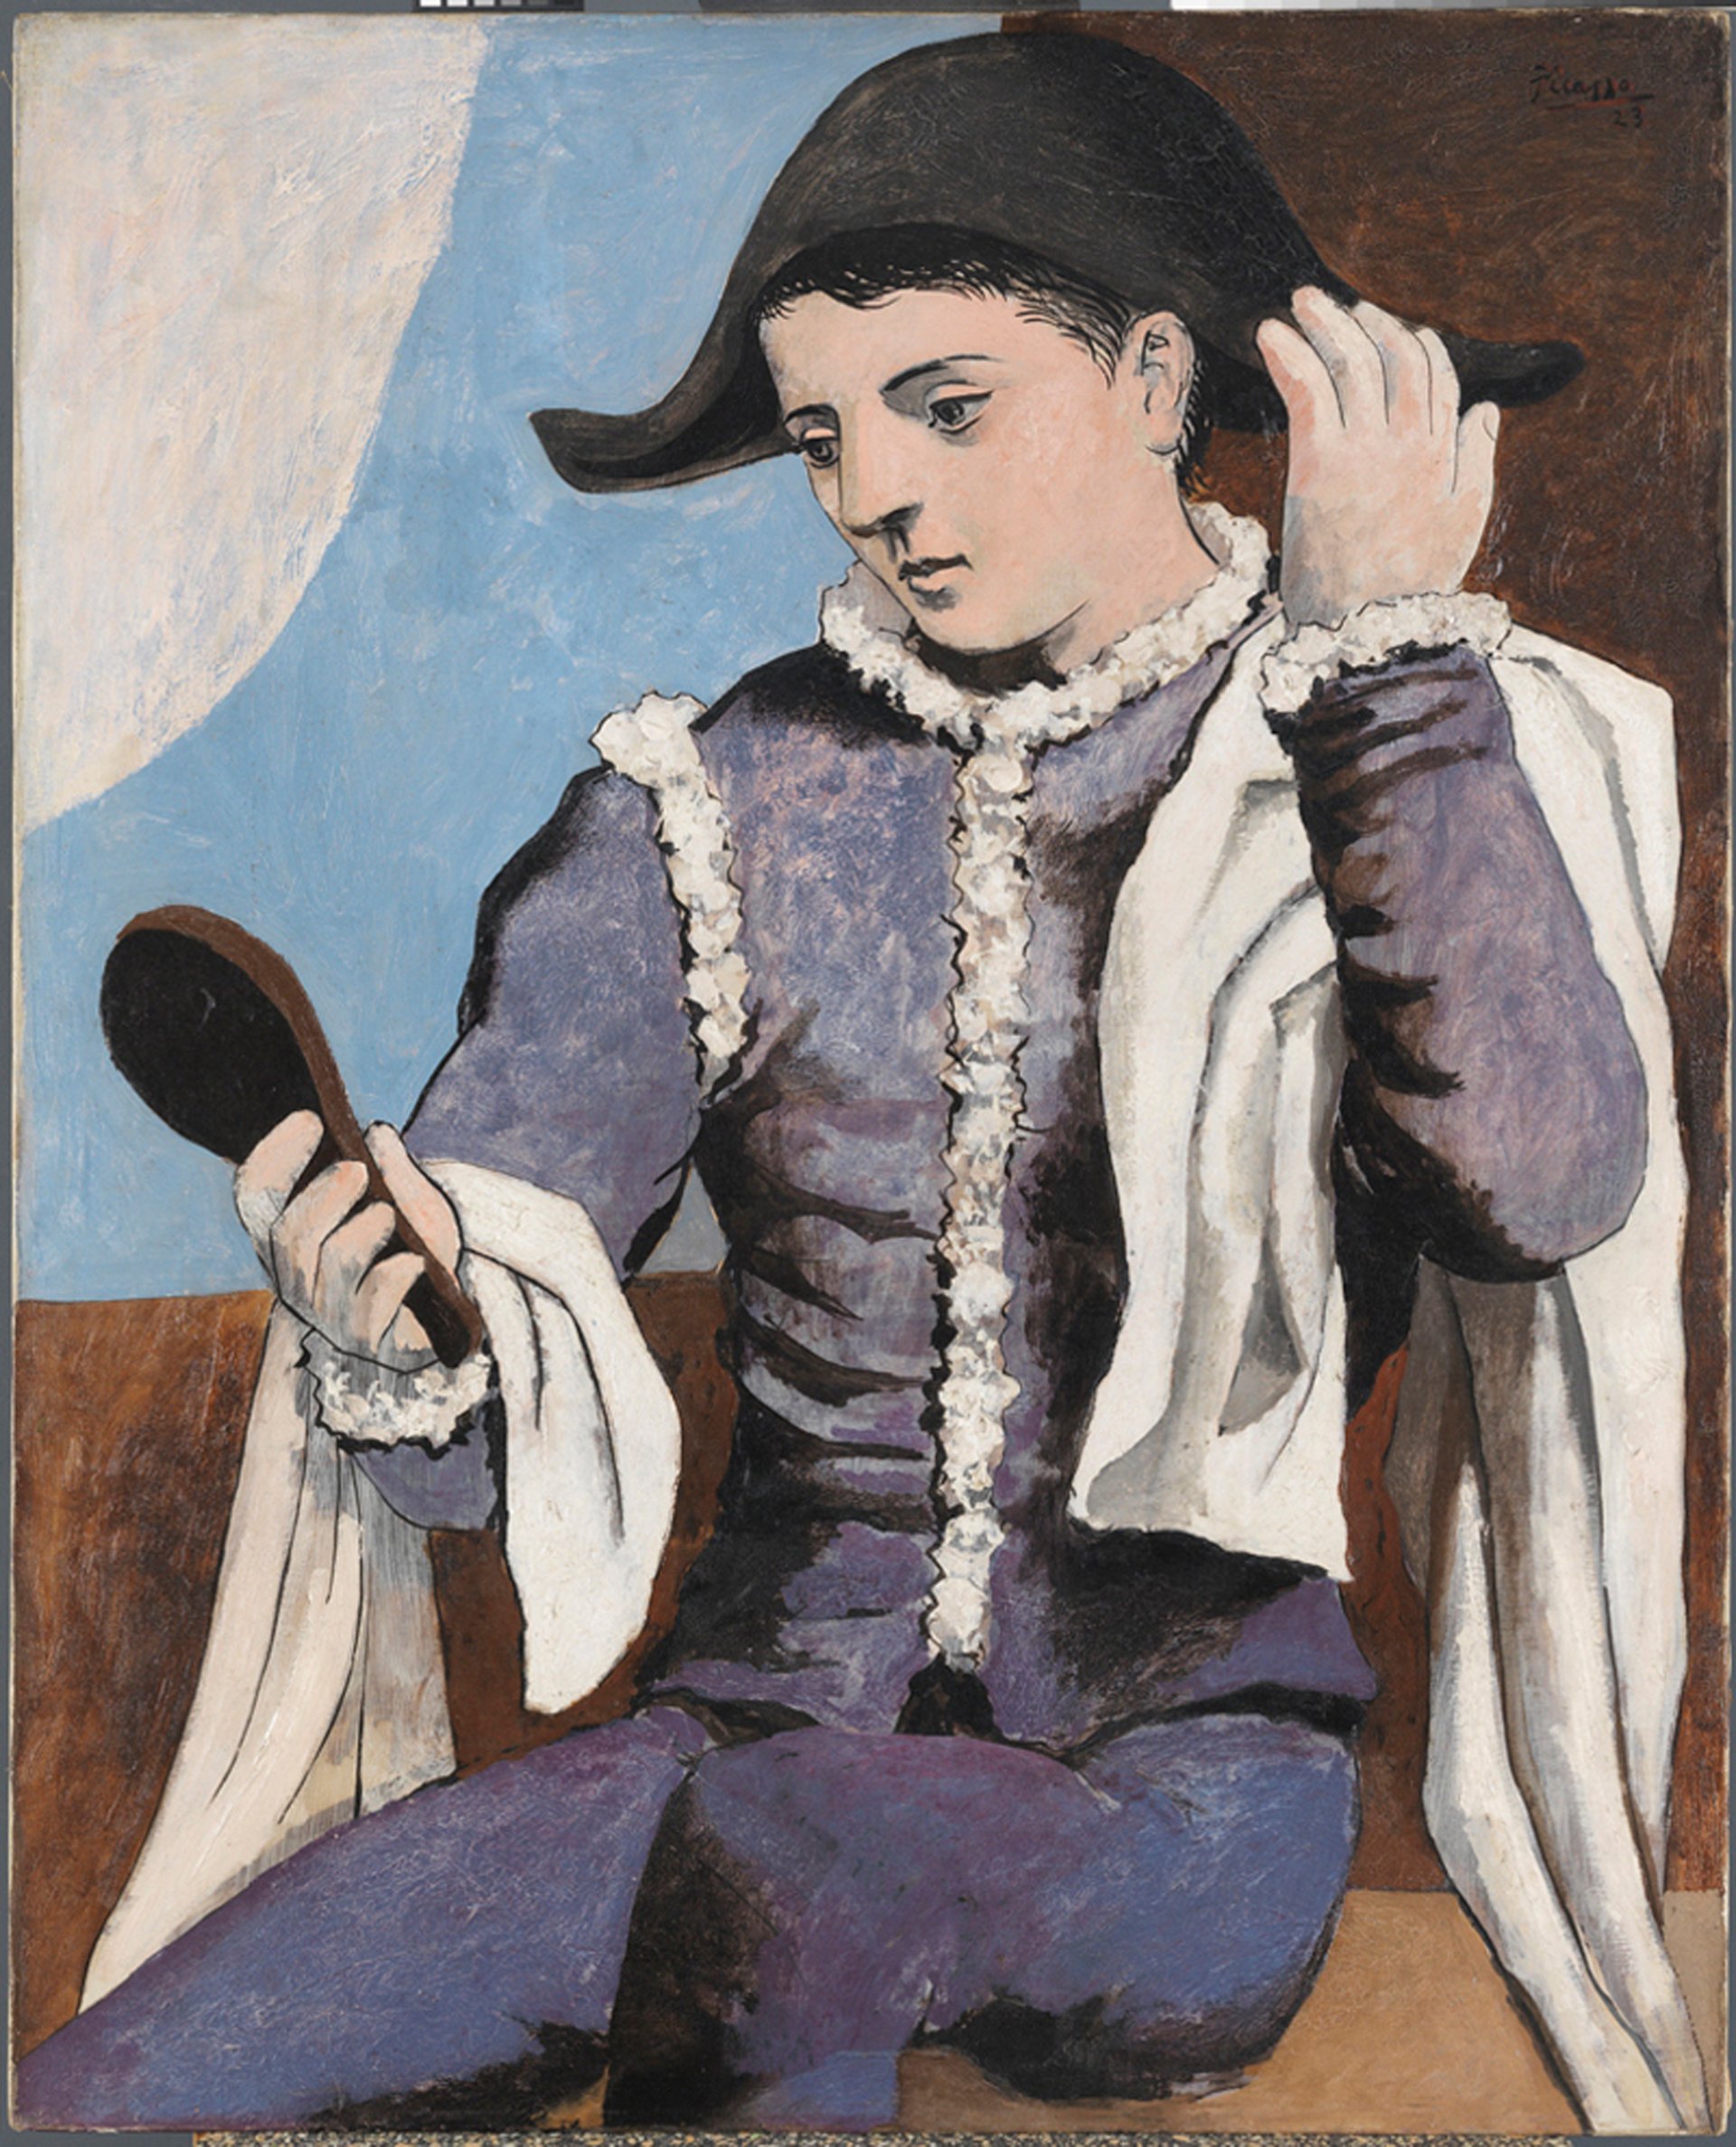 Imagen visible de la obra Arlequín con espejo, de Picasso